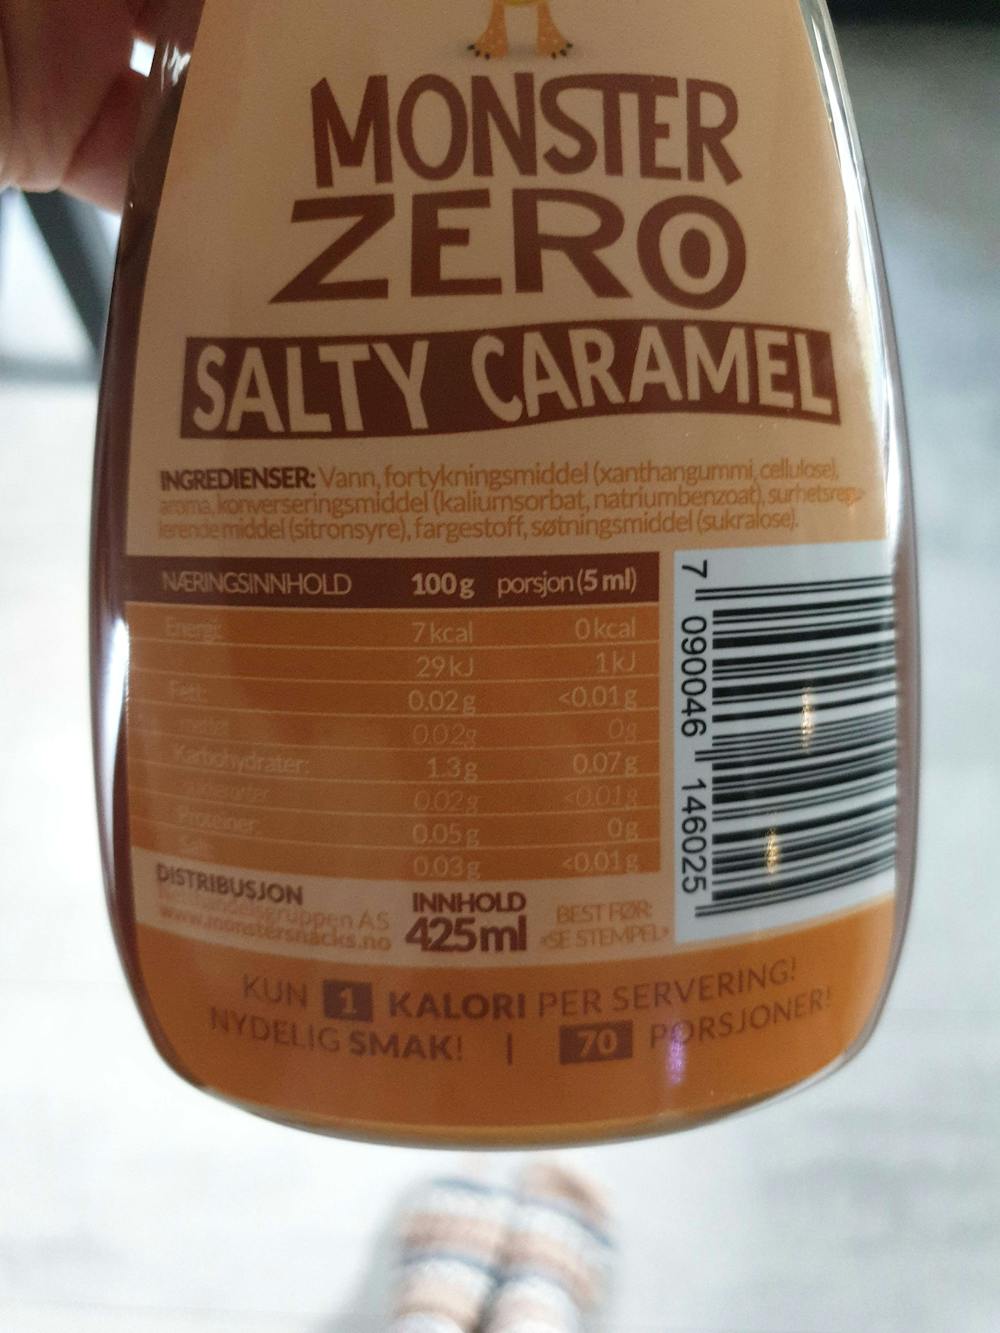 Ingrediensliste - Monster zero salty caramel, Monster snacks